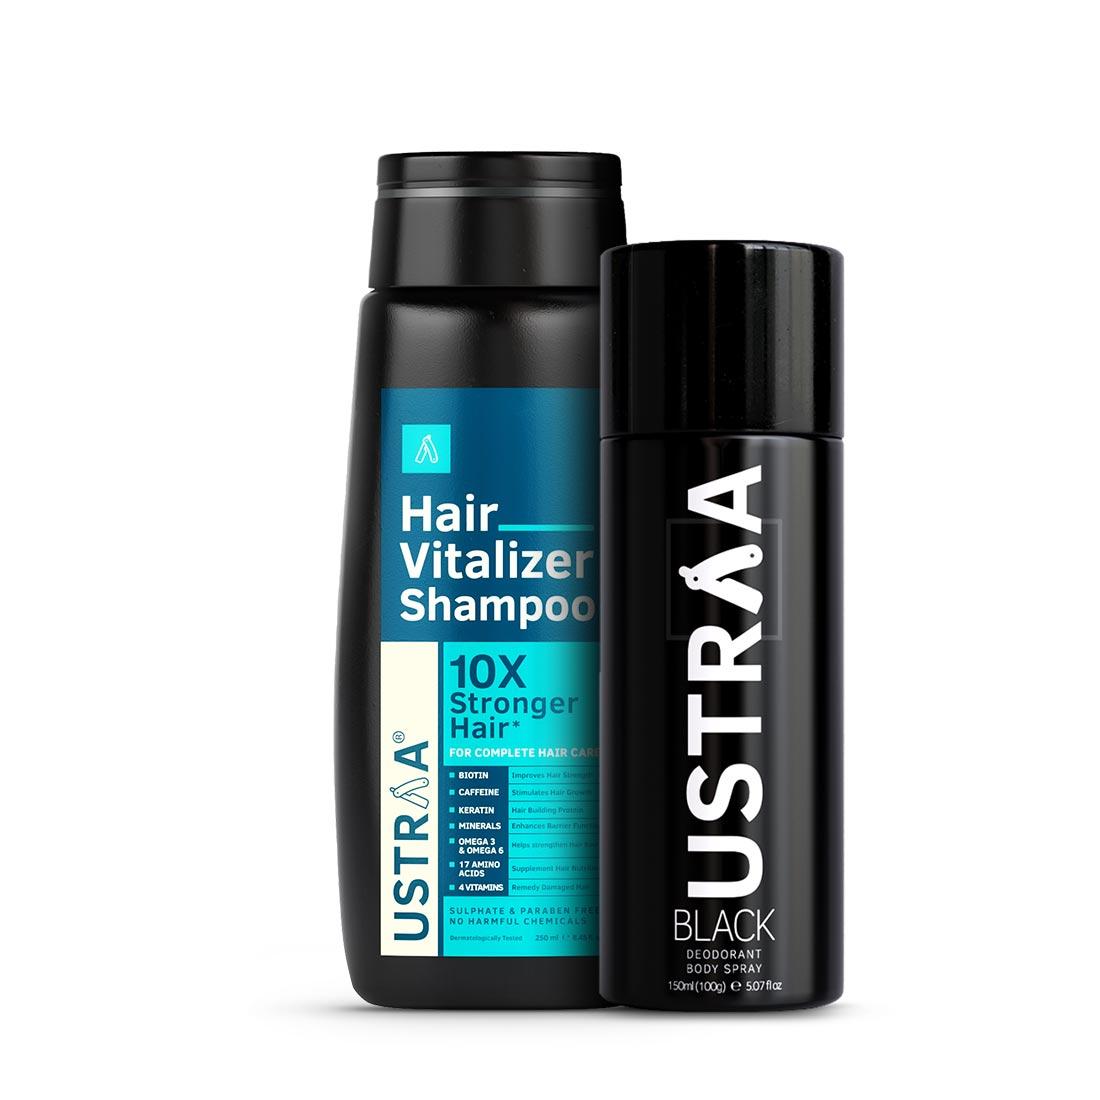 Hair Vitalizer Shampoo & Black Deodorant